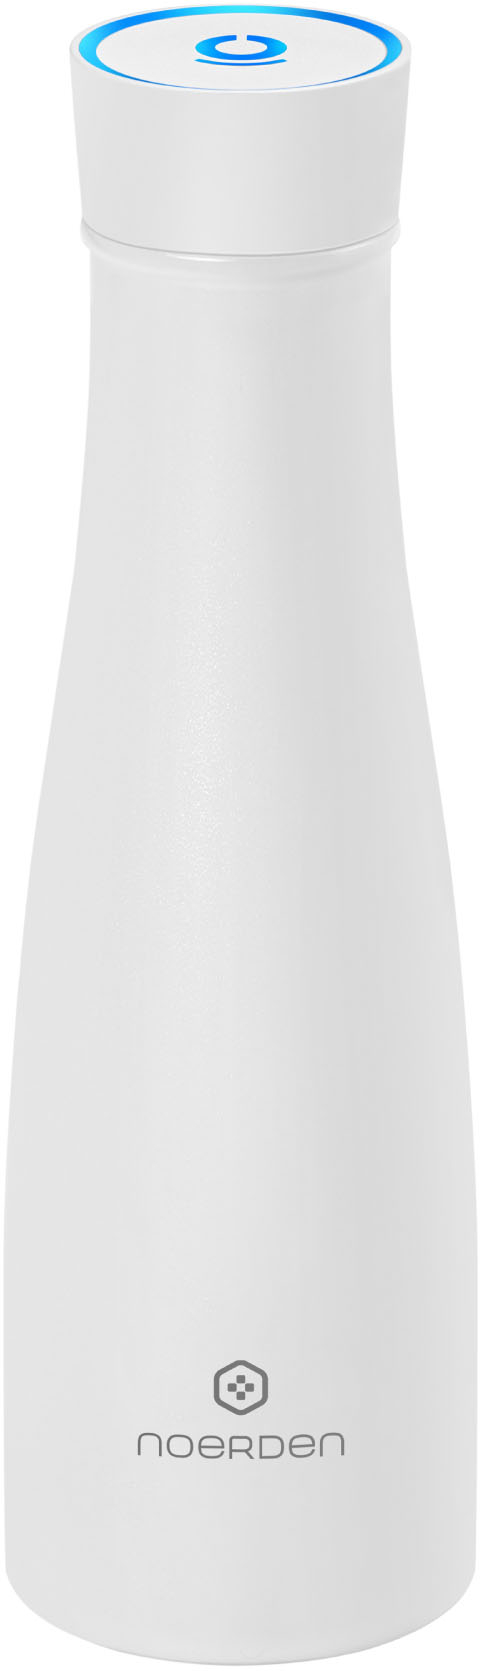 Noerden LIZ Smart Water Bottle 16 oz UV Self-Cleaning Sterilization White 